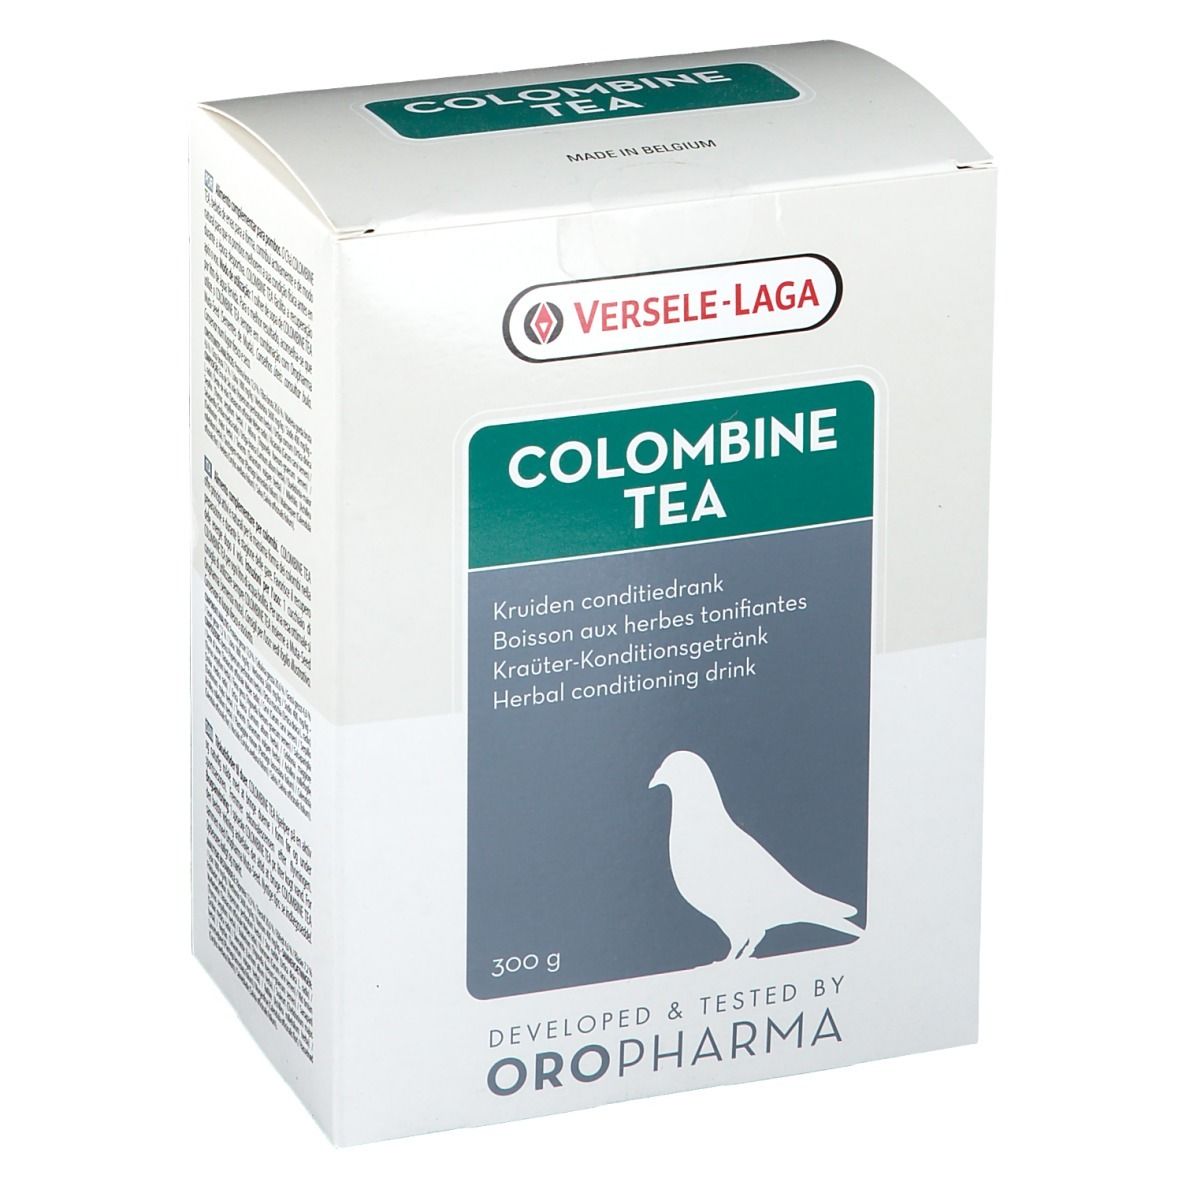 Colombine Tea